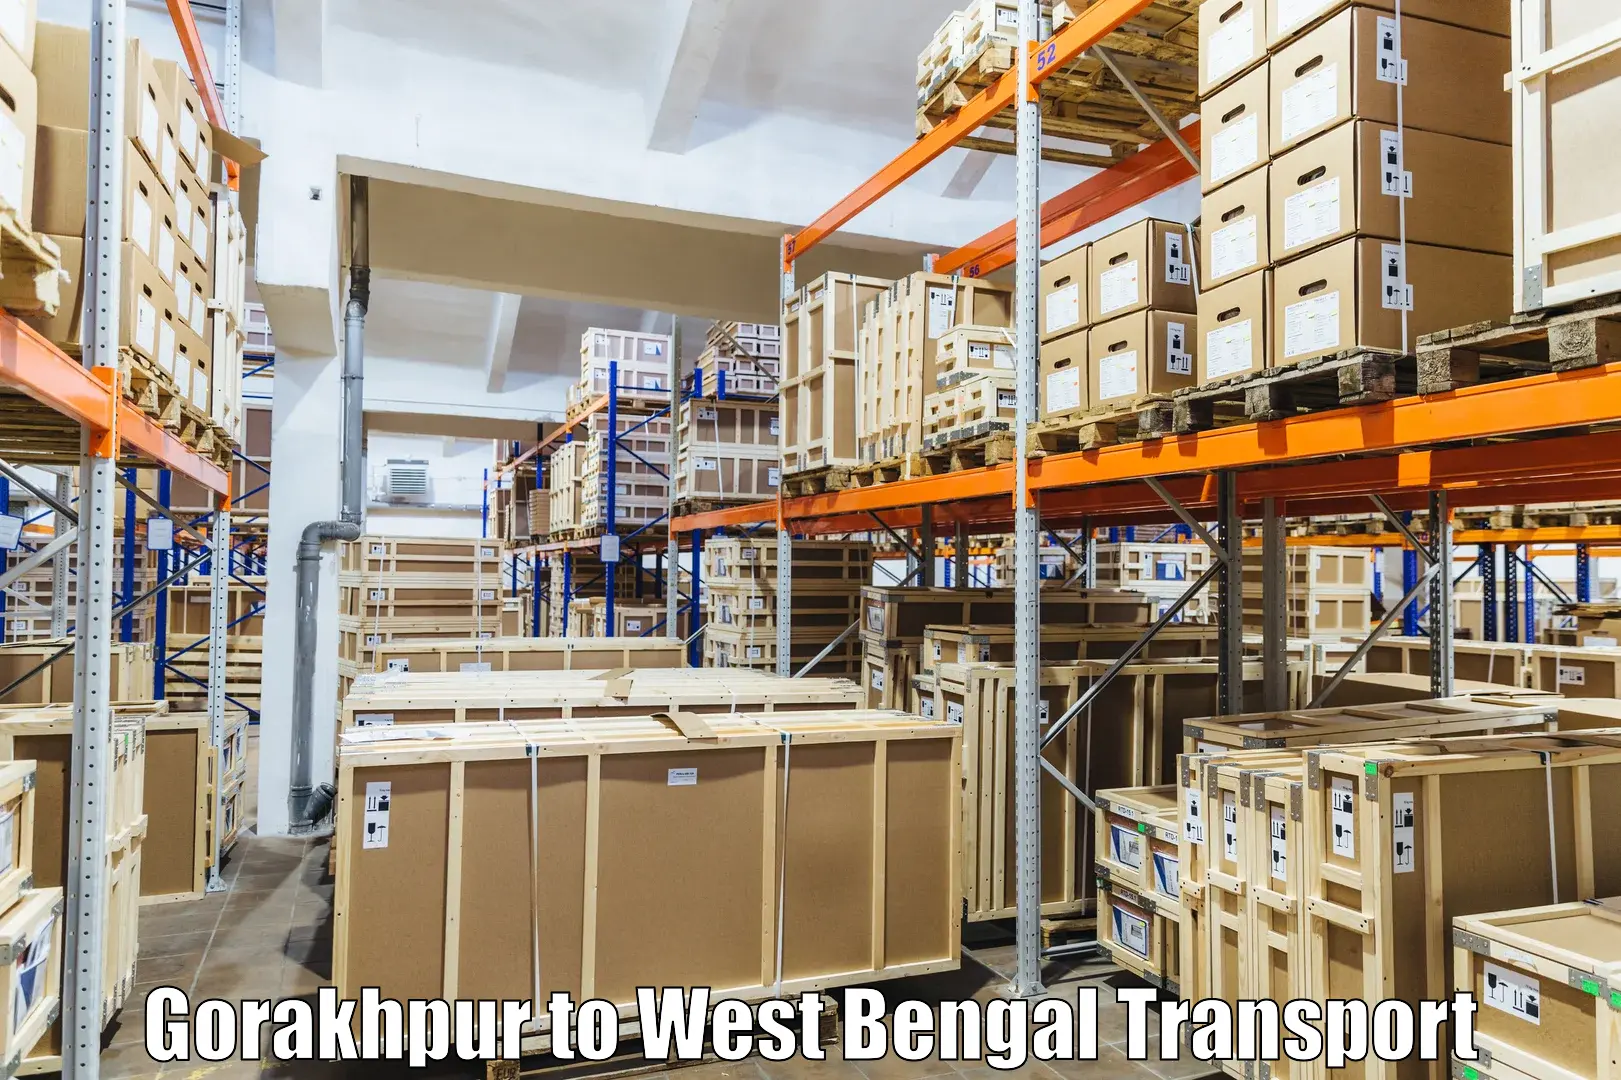 Cargo transportation services in Gorakhpur to Tribeni